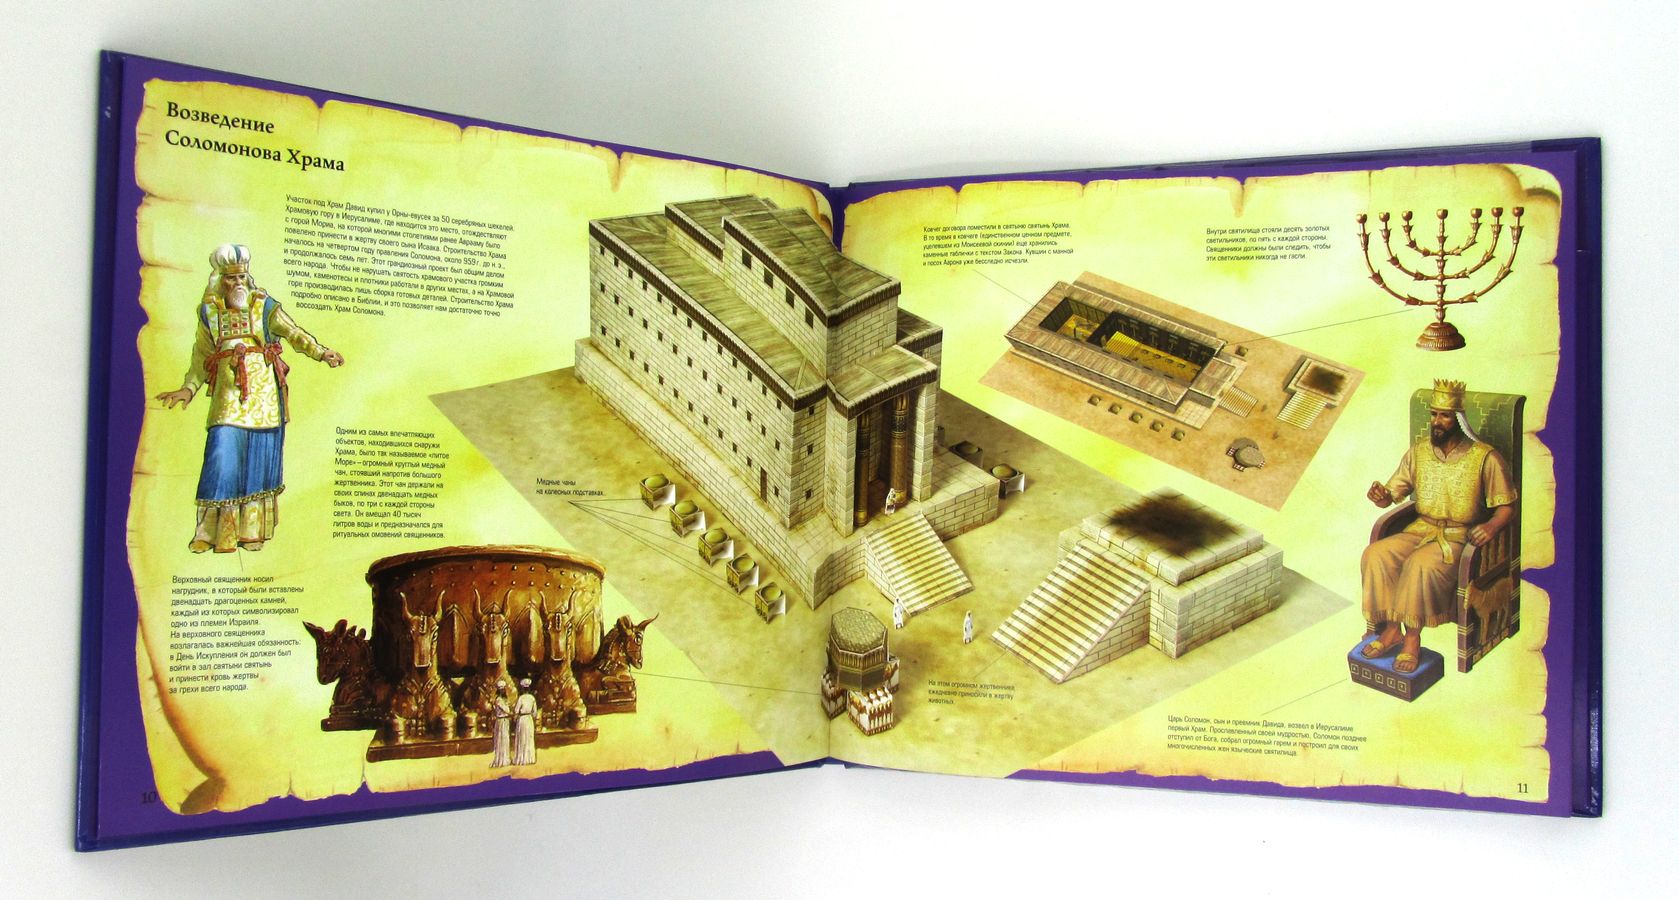 Храм Соломона Пособие для изучения Библии